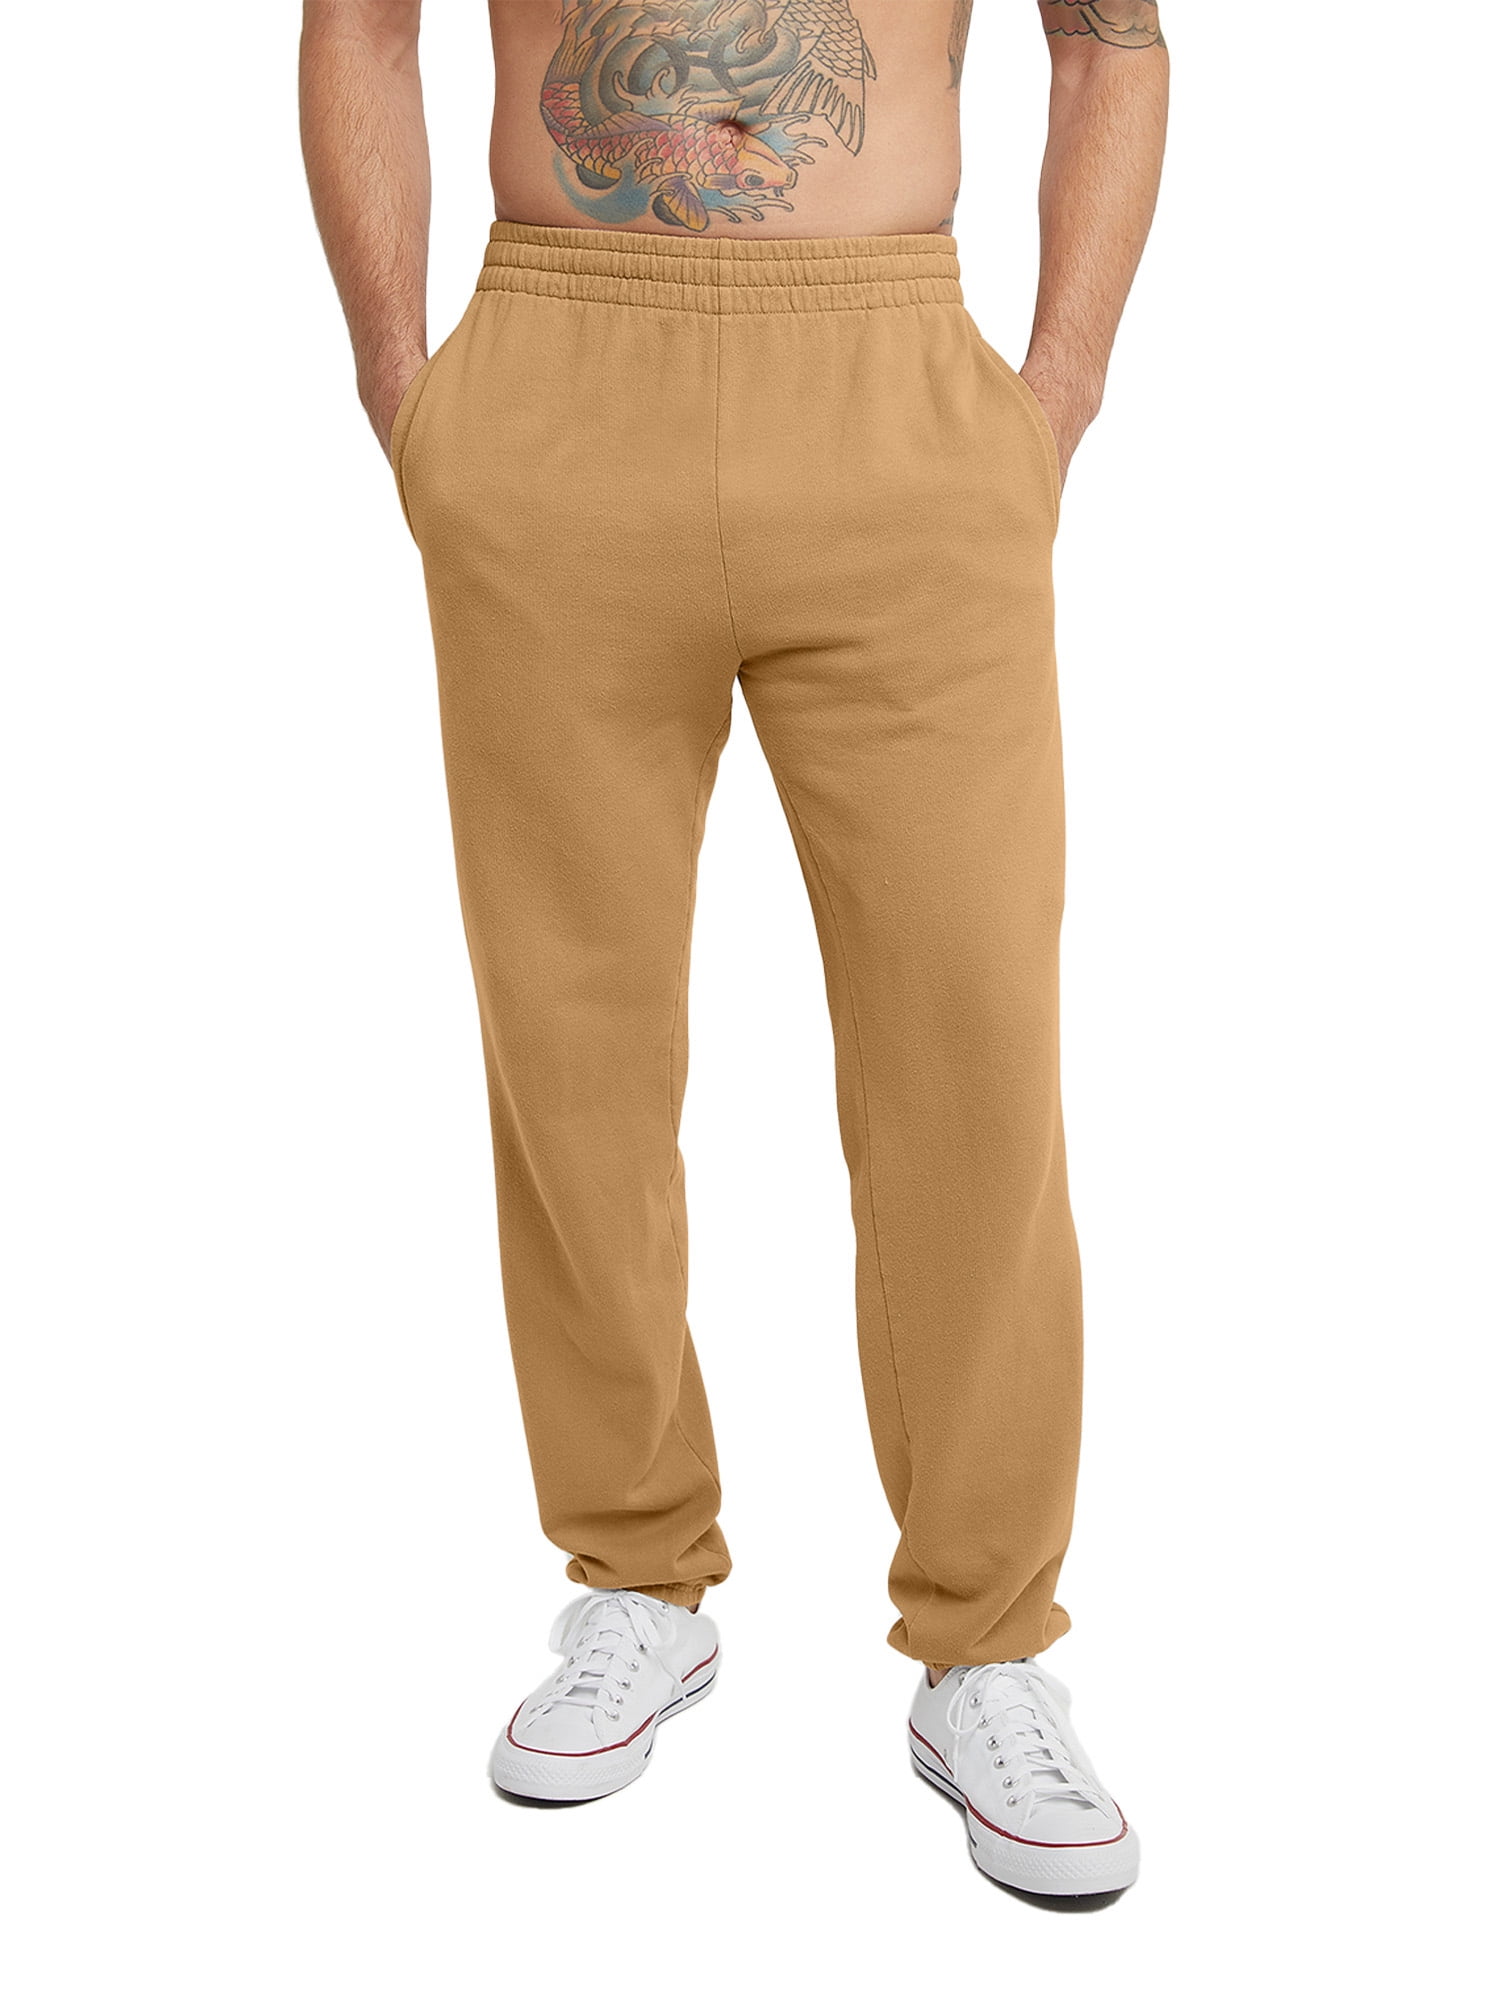 Hanes Originals Men's Garment Dyed Sweatpants with Pockets, 31 Concrete  Gray L 